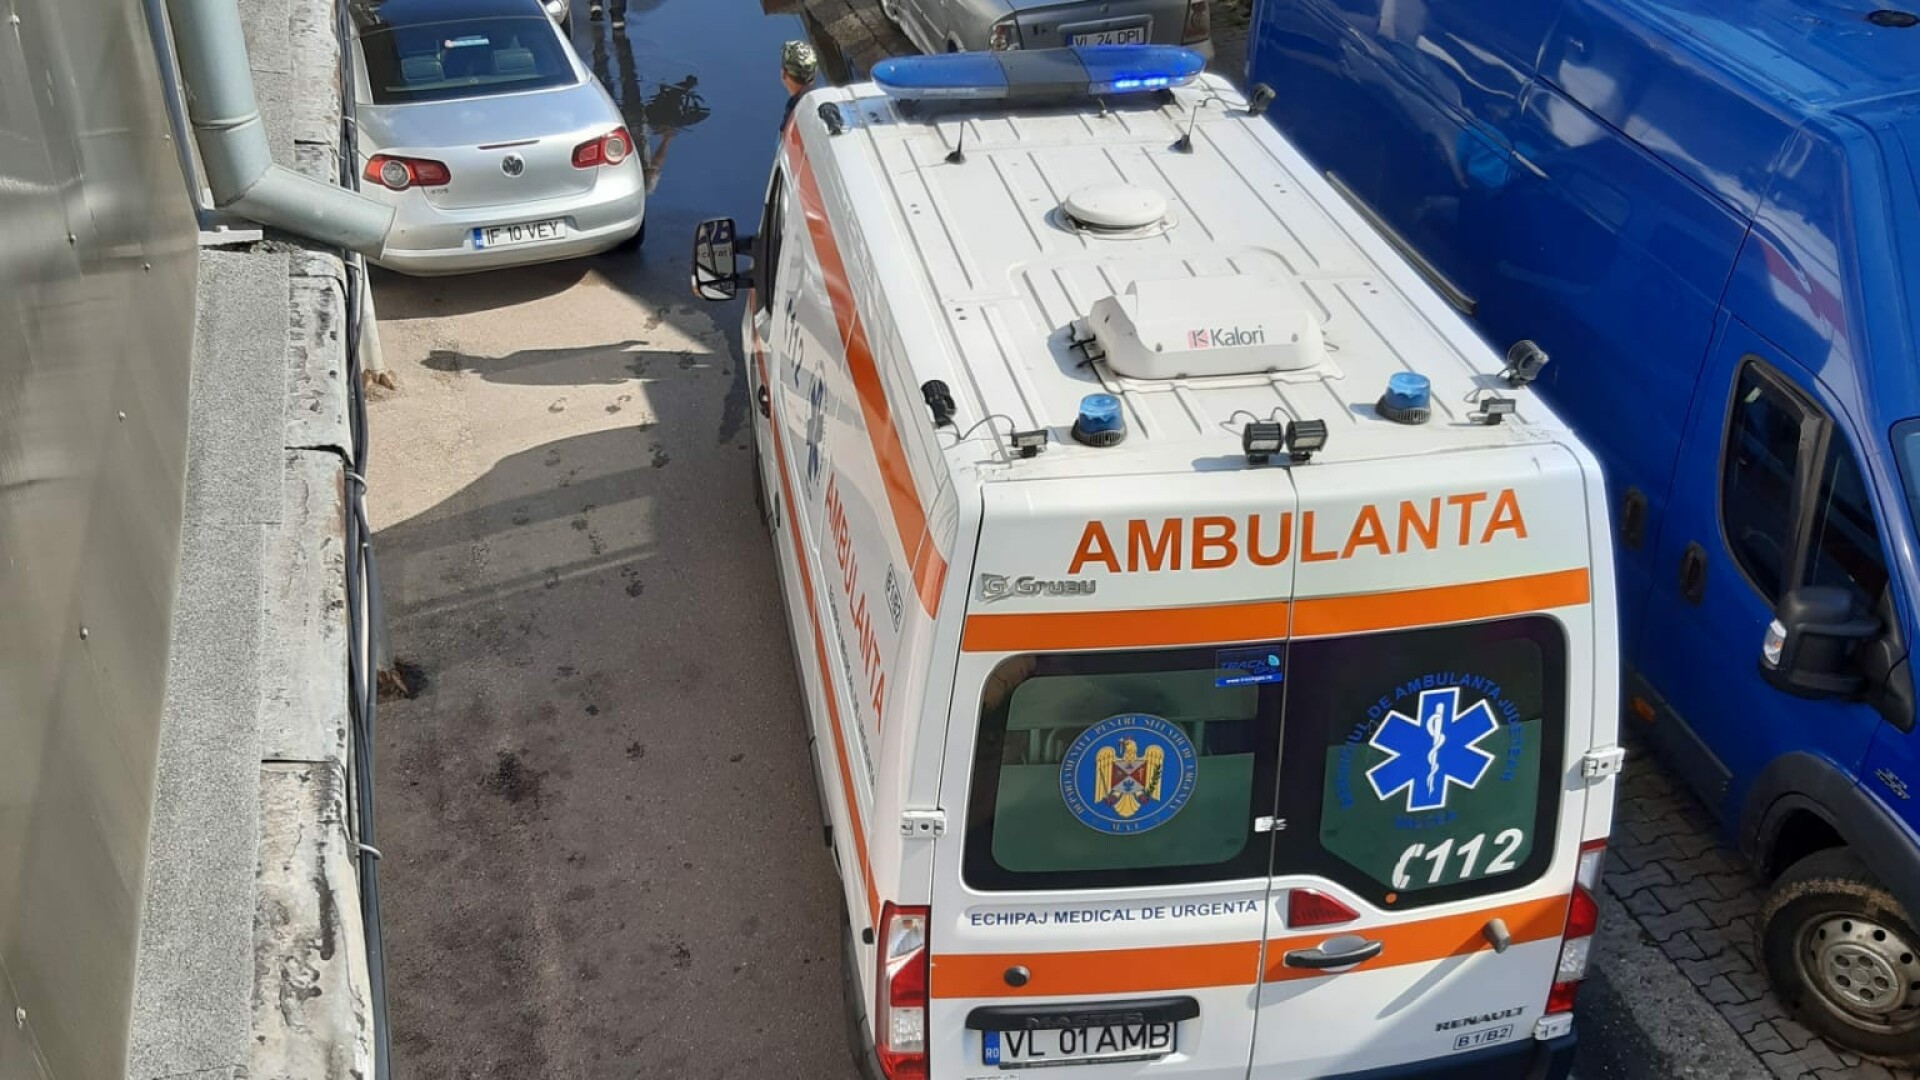 Ambulanță blocată în Drăgășani de mașinile parcate ilegal: ”Nesimțirea ucide”. Ce s-a întâmplat cu pacientul